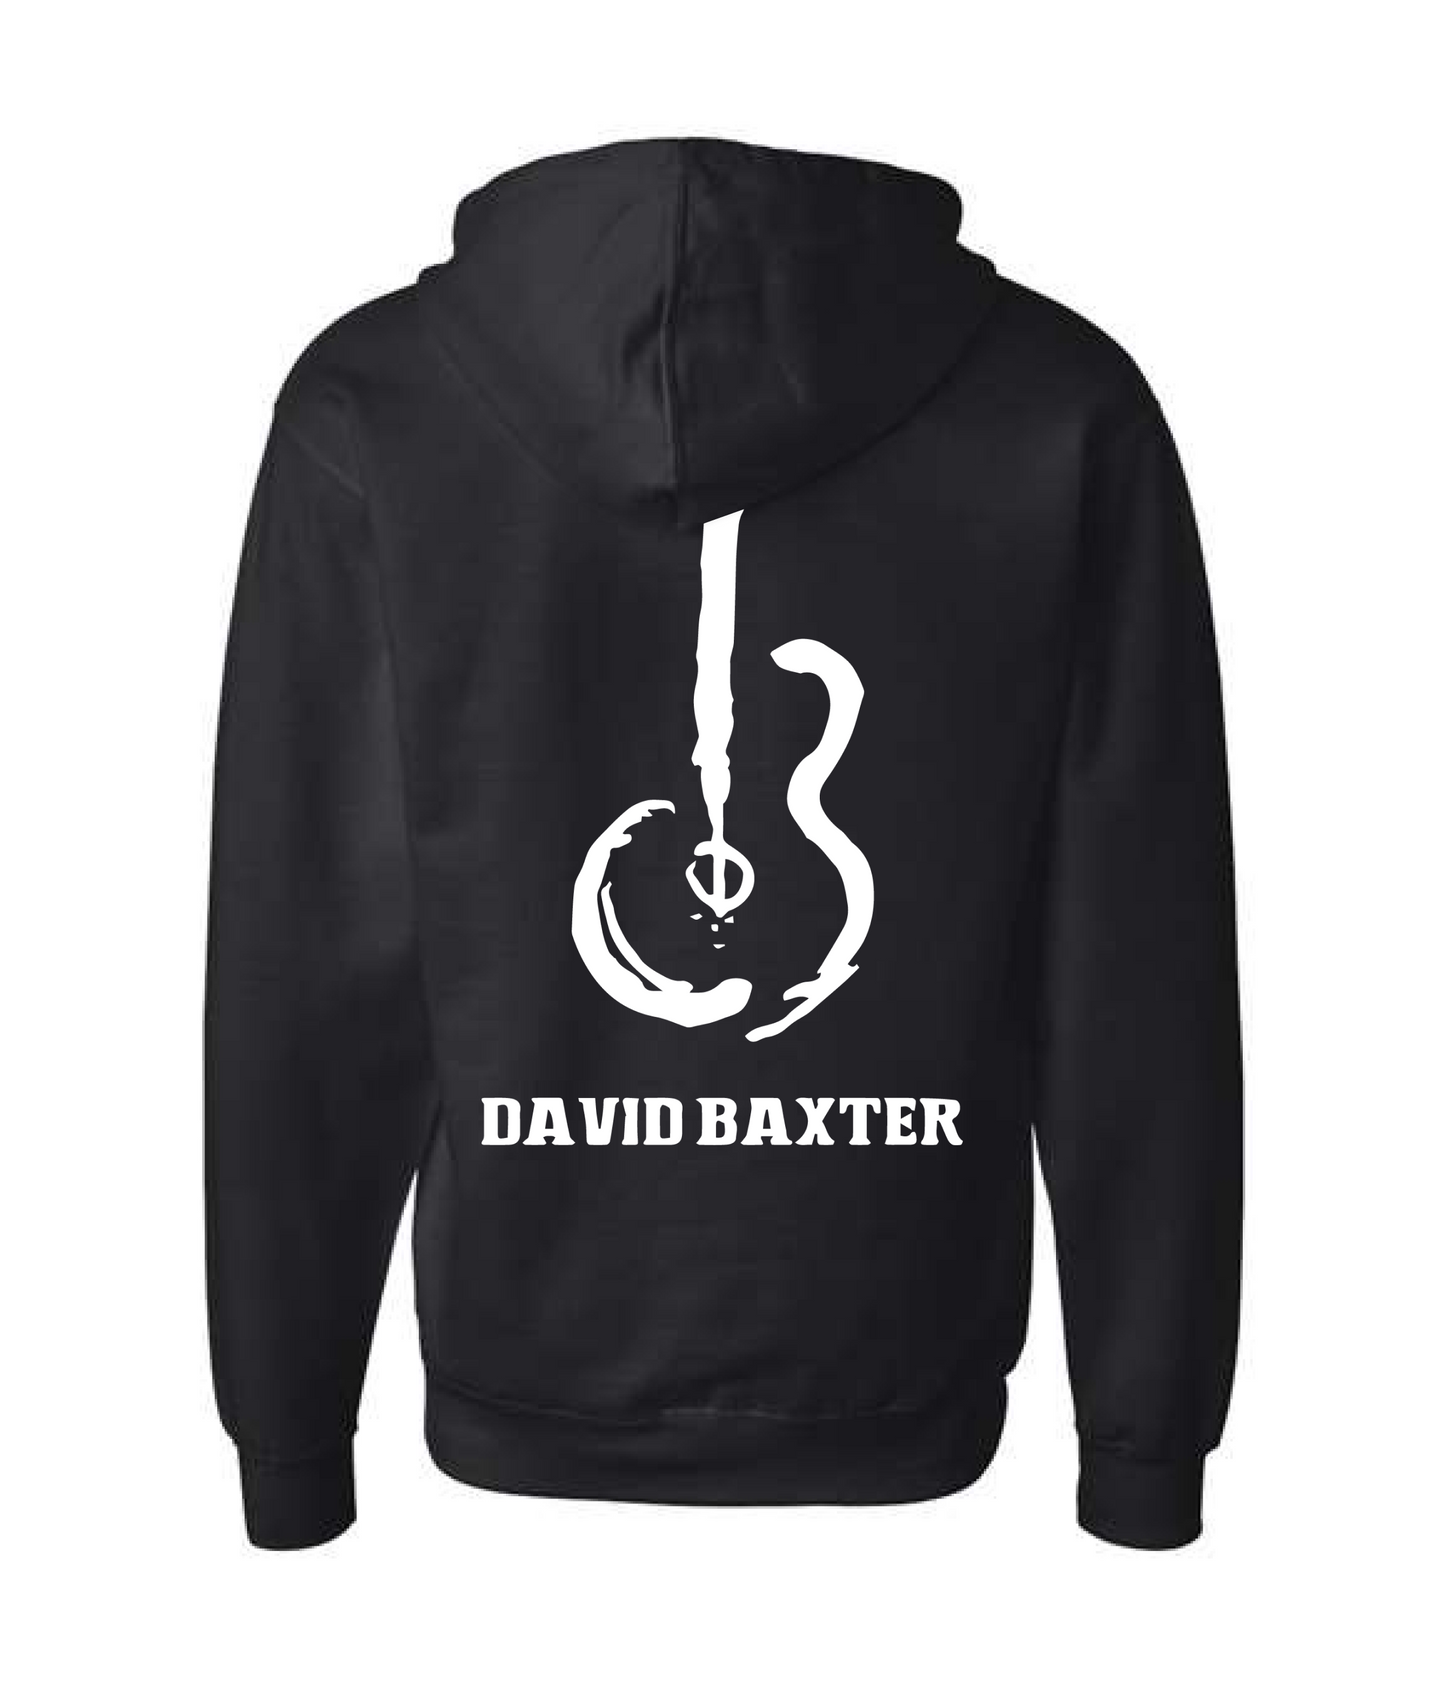 David Wayne Baxter - Guitar Logo - Black Zip Hoodie